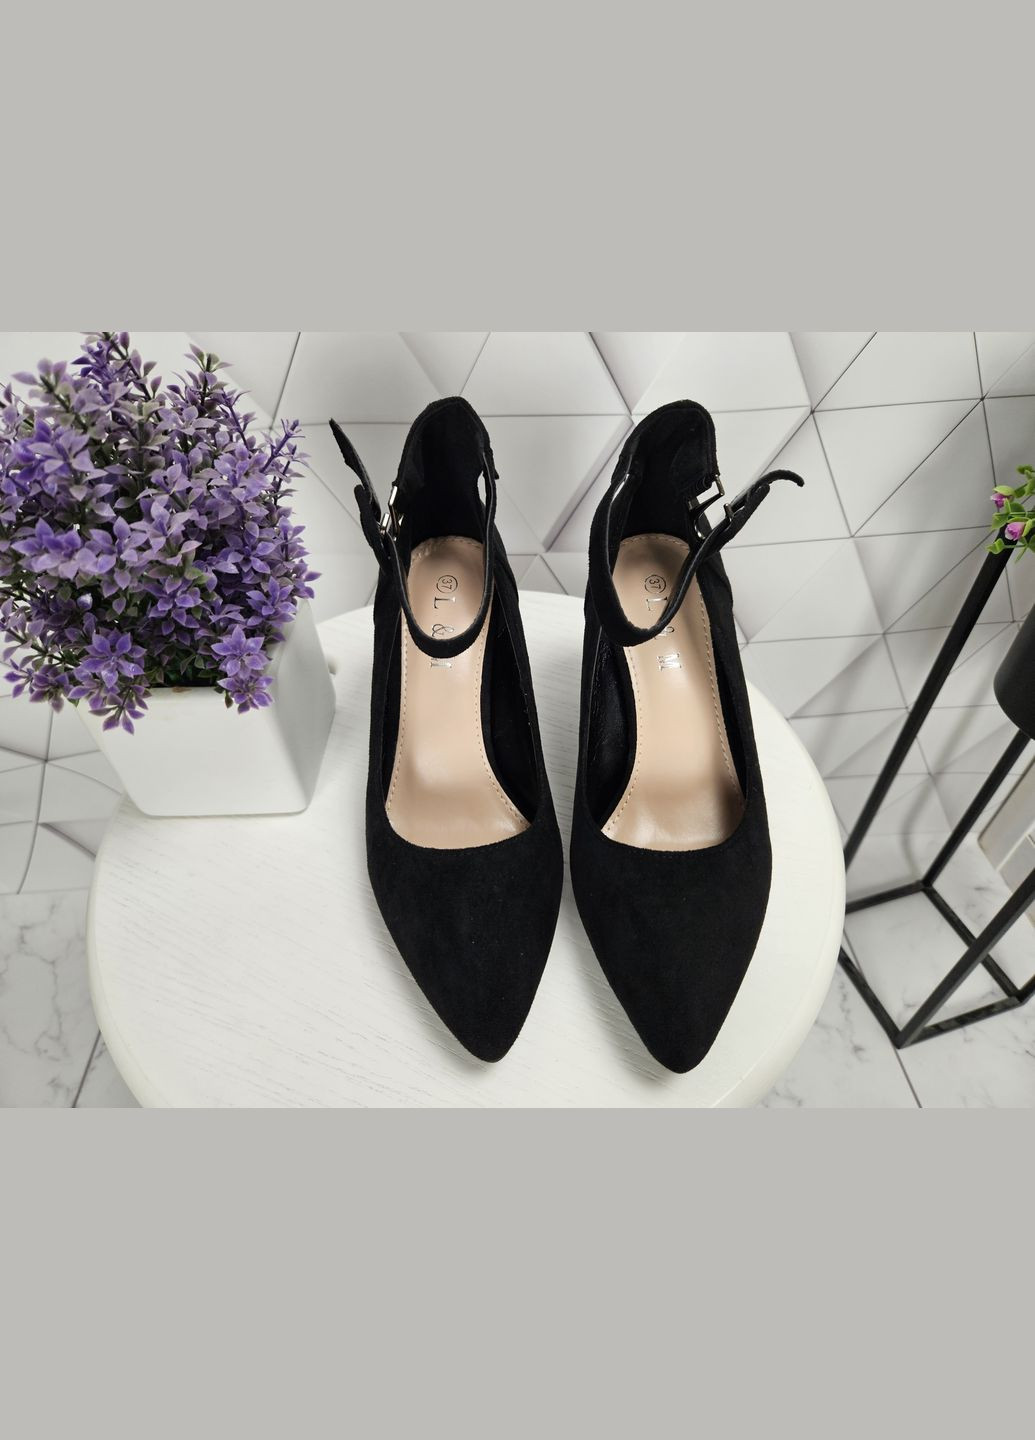 Туфли лодочки черные замшевые на невысоком широком каблуке с ремешком застежкой (24,5 см) sp-2926 No Brand